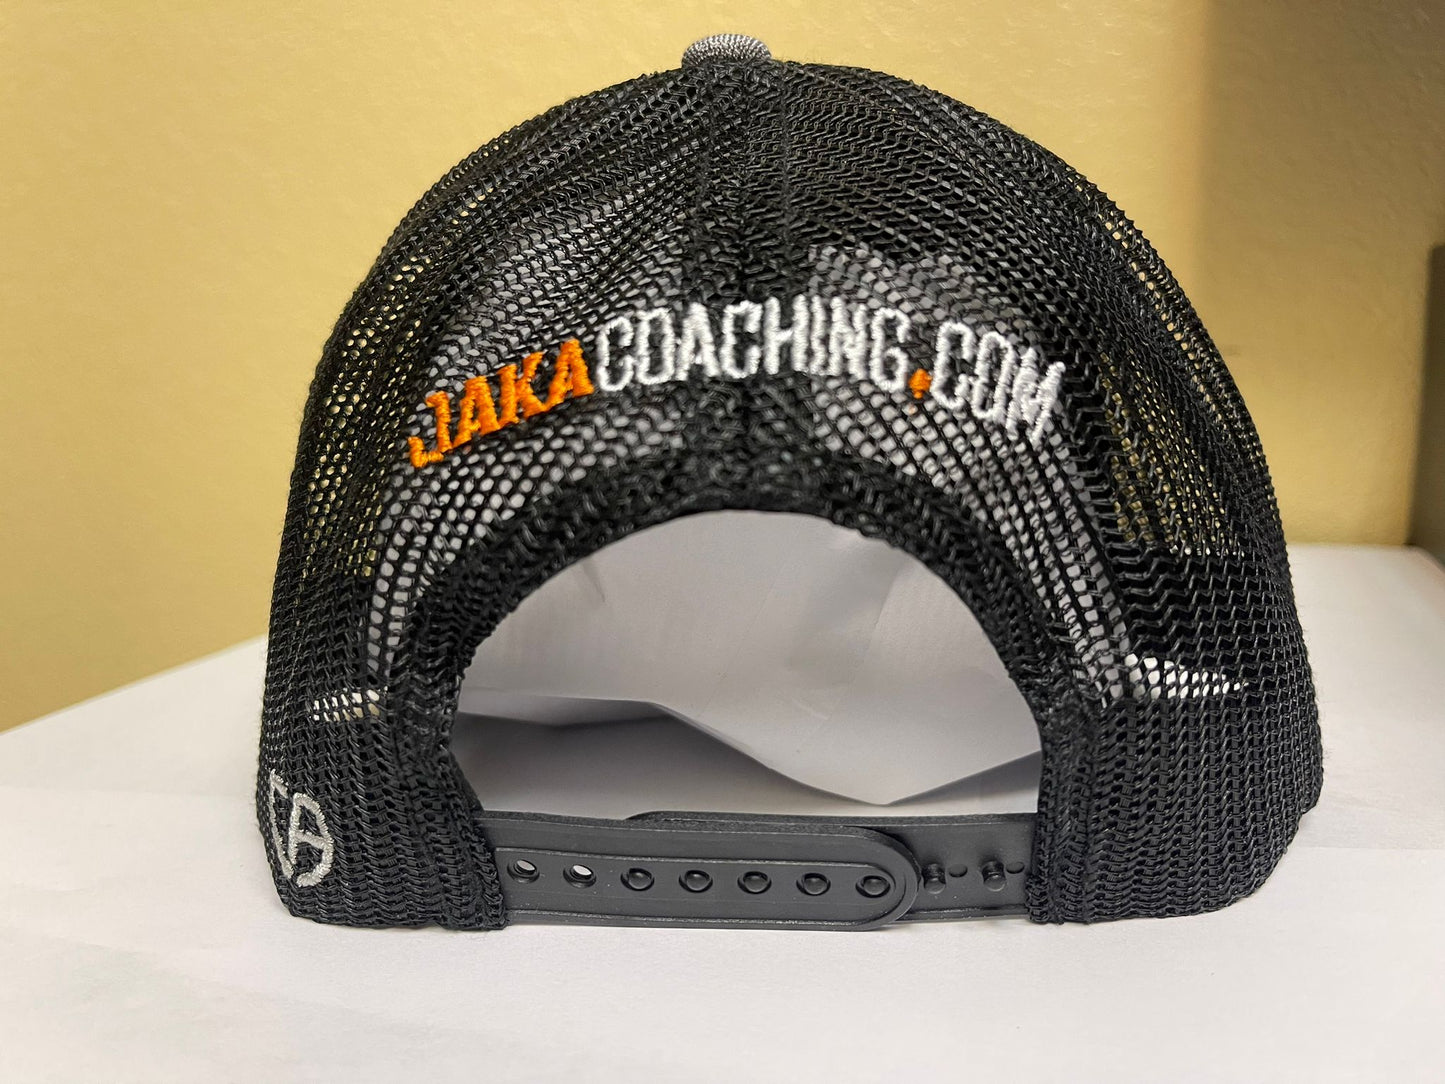 Jaka Coaching Hat